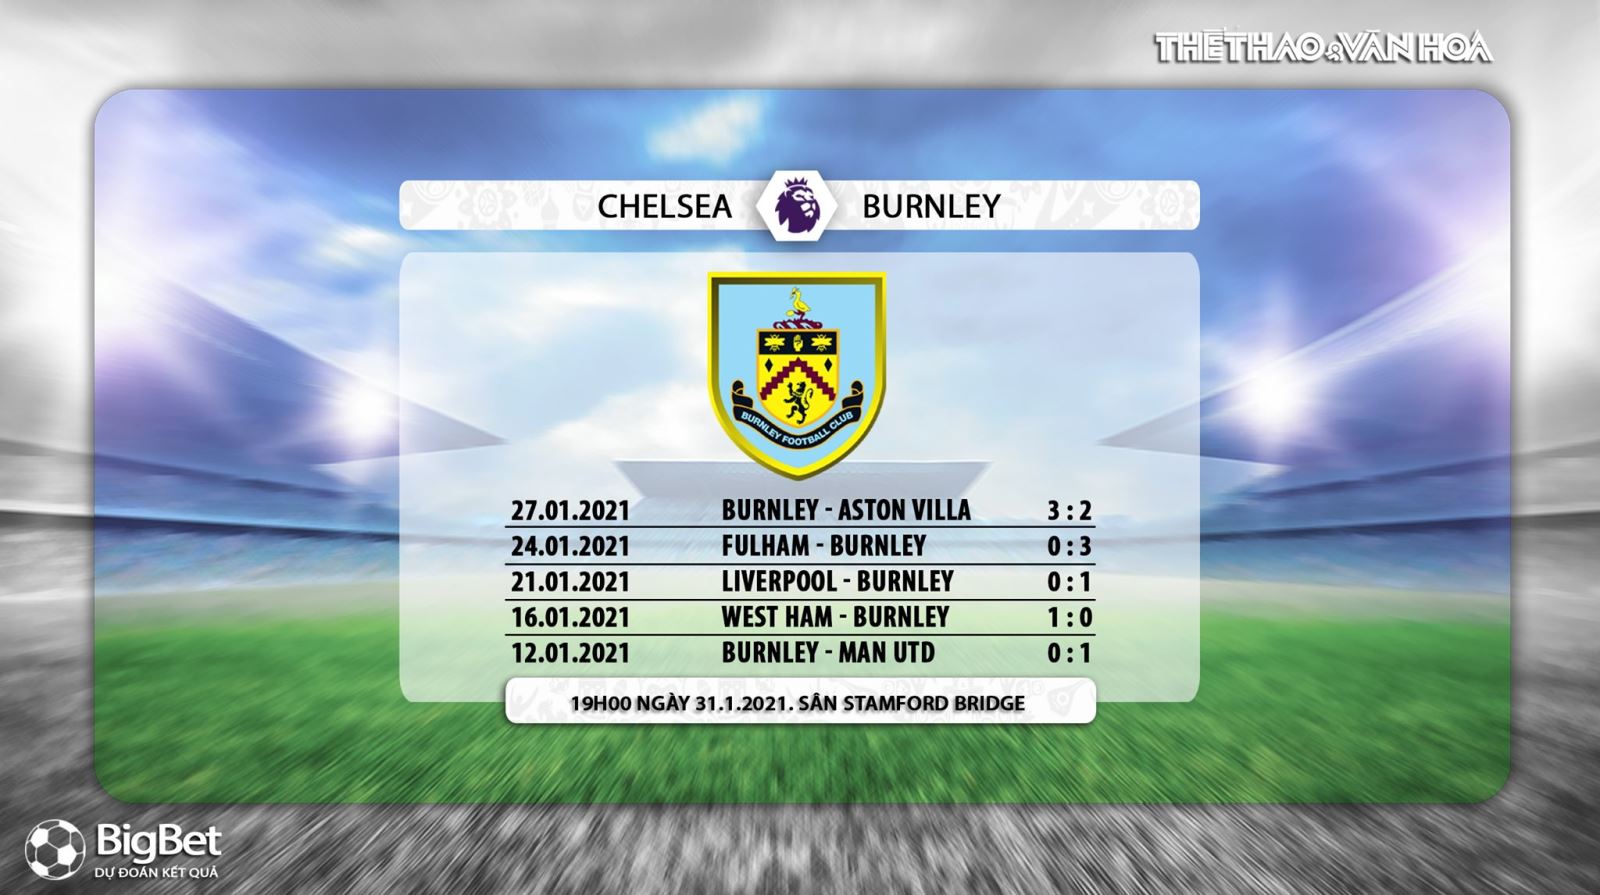 Keo nha cai, Chelsea vs Burnley, Vòng 21 giải Ngoại hạng Anh, Trực tiếp K+PC, Trực tiếp bóng đá, Trực tiếp Chelsea đấu với Burnley, Kèo bóng đá Chelsea, kèo Burnley